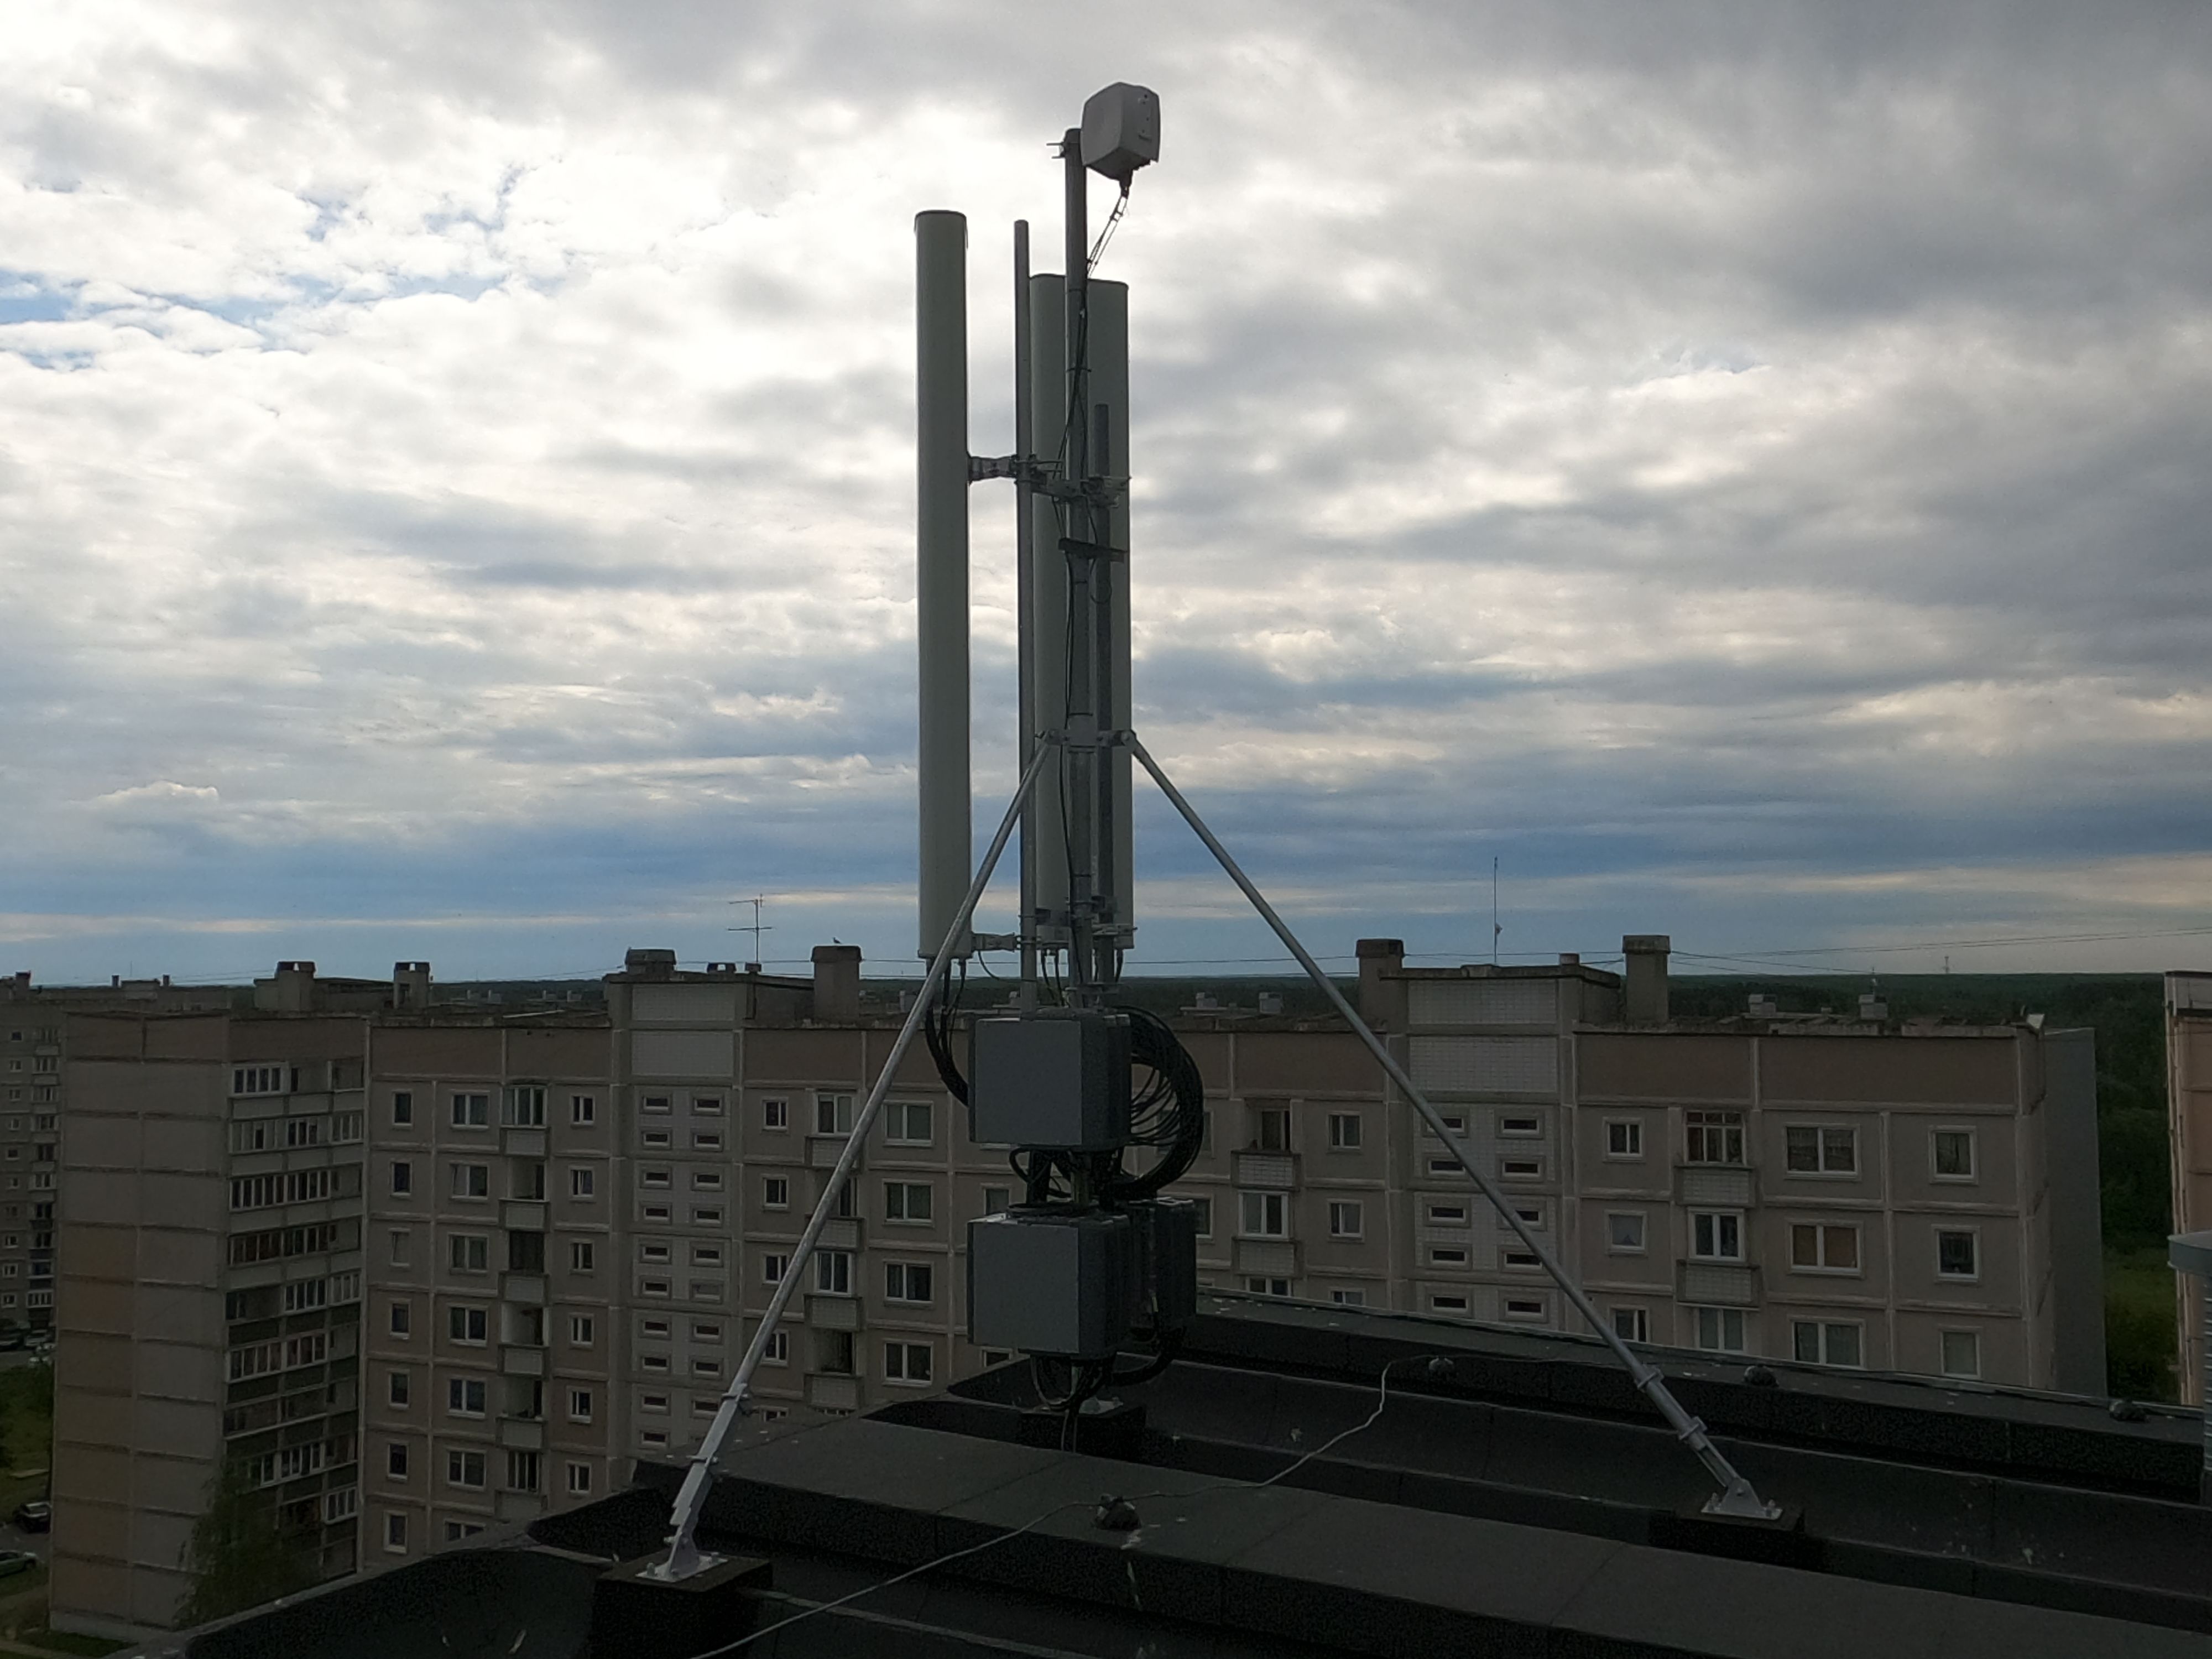 Так выглядит антенна TELE 2 на крыше дома по ул. Ислицес, 5. Каждый месяц дом получает от оператора по 350 евро